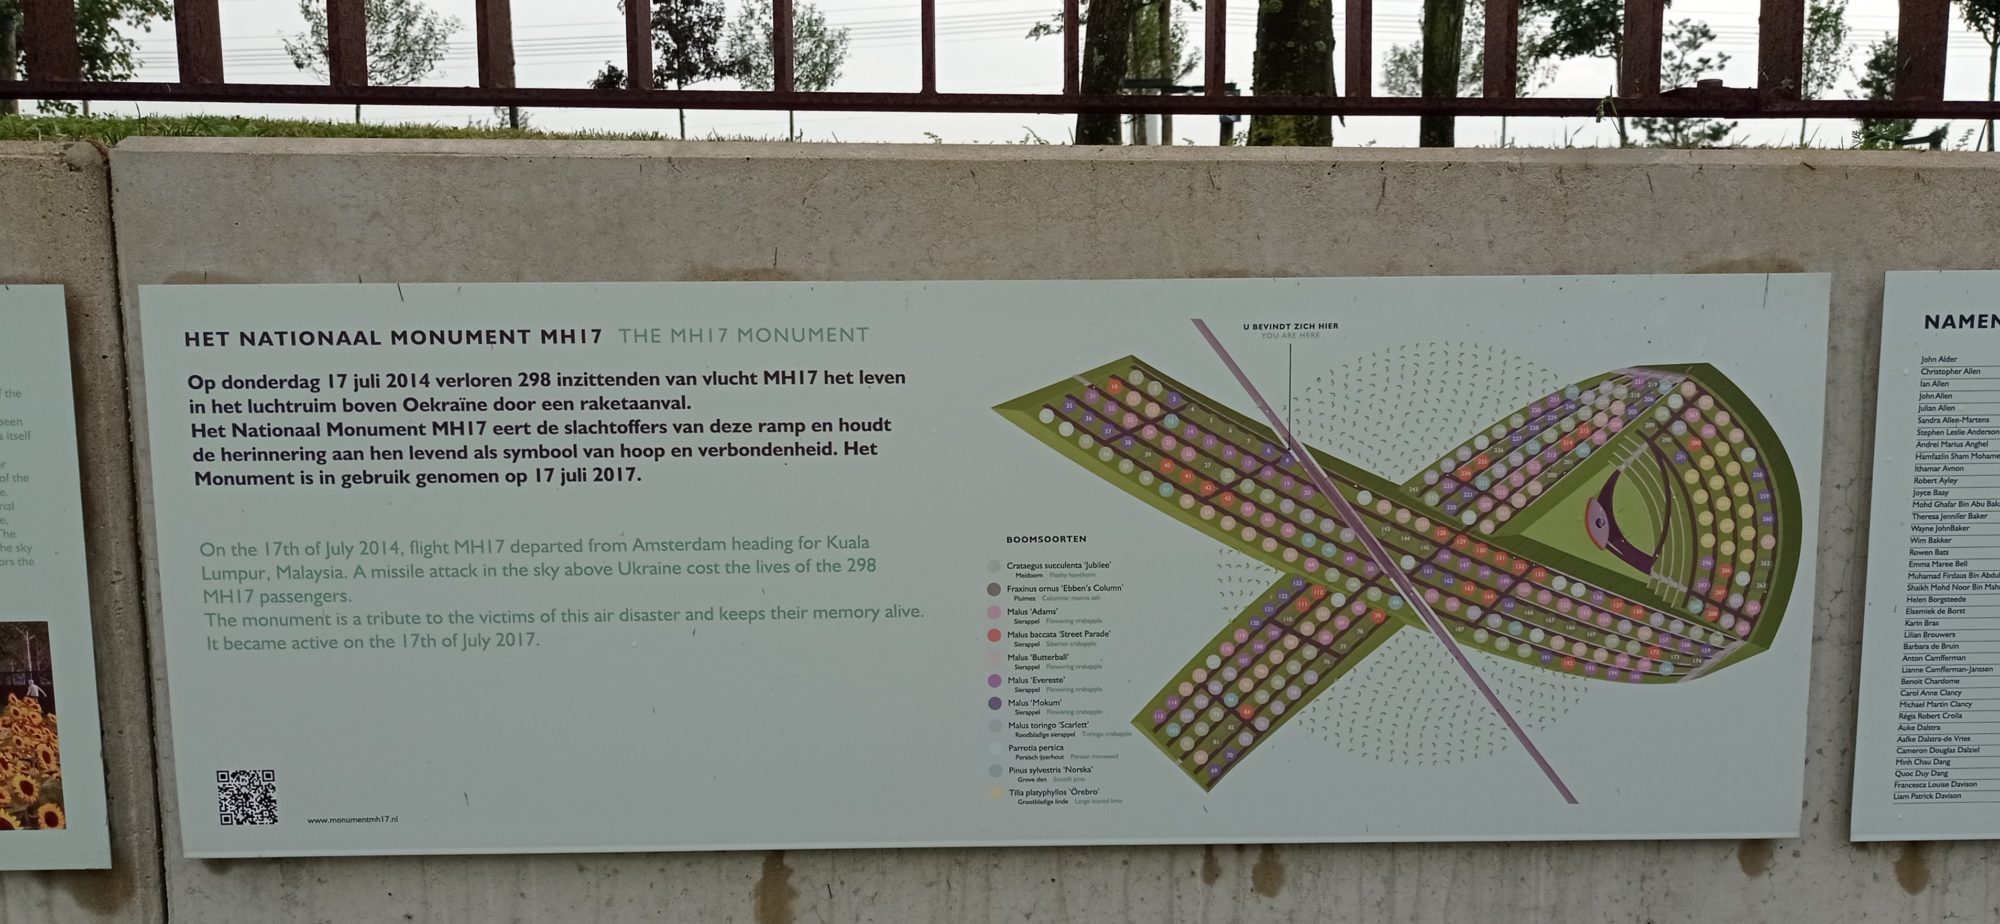 інформація про Національний меморіал MH17